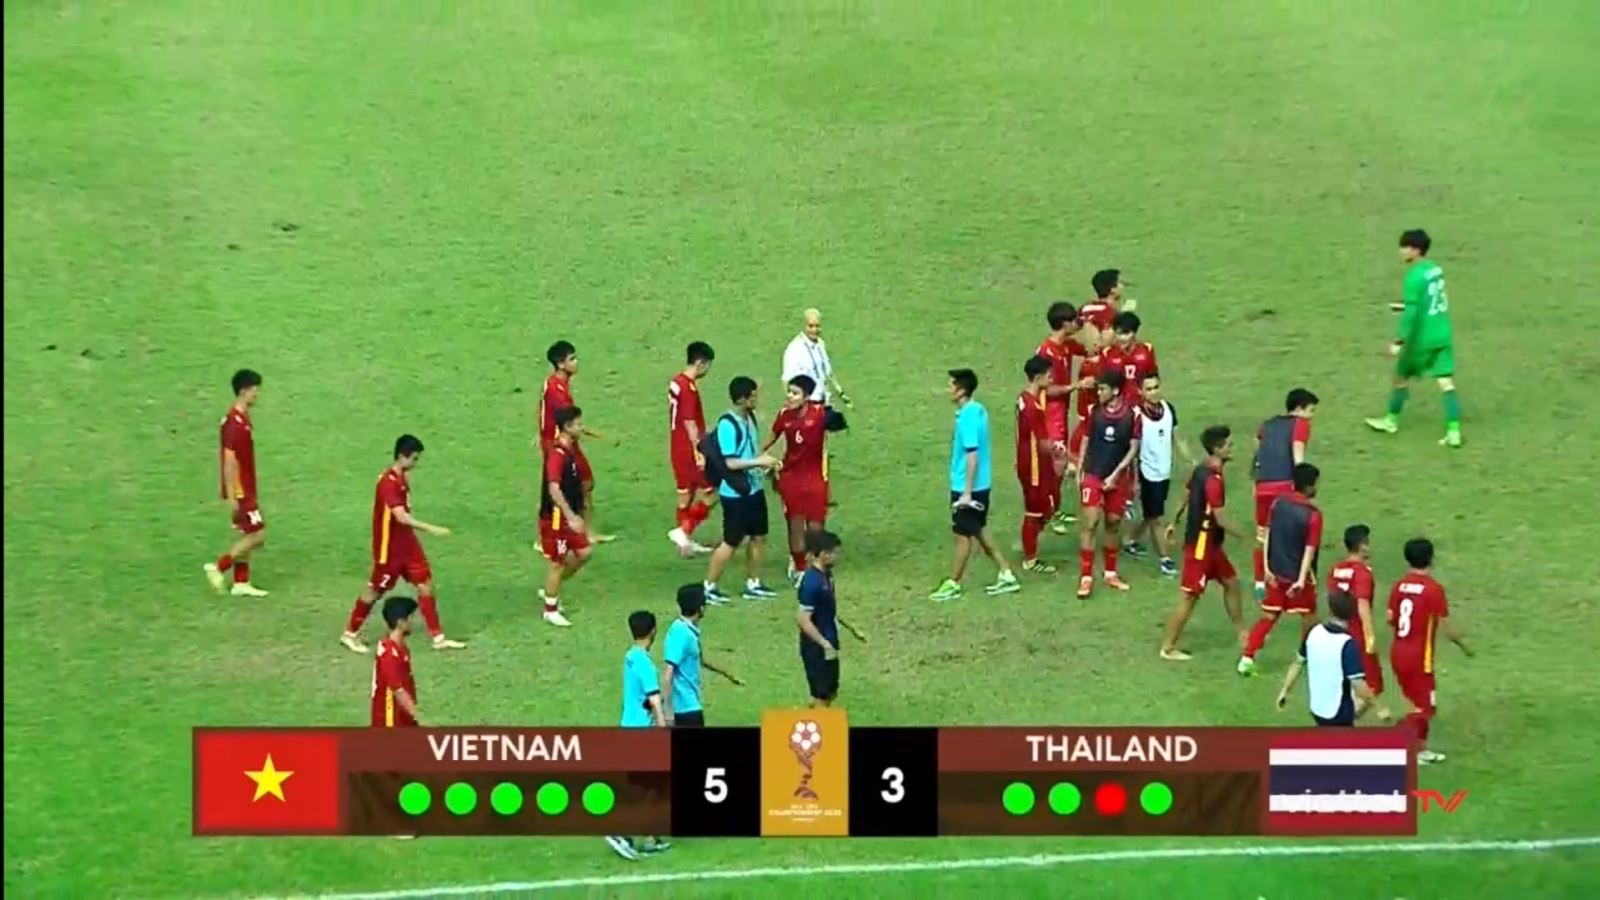 kết quả bóng đá, kết quả bóng đá hôm nay, ket qua bong da, ket qua bong da hom nay, kết quả bóng đá Đông Nam Á, kết quả Ngoại hạng Đông Nam Á, U19 Việt Namvs U19 Thái Lan, KQBD Đông Nam Á